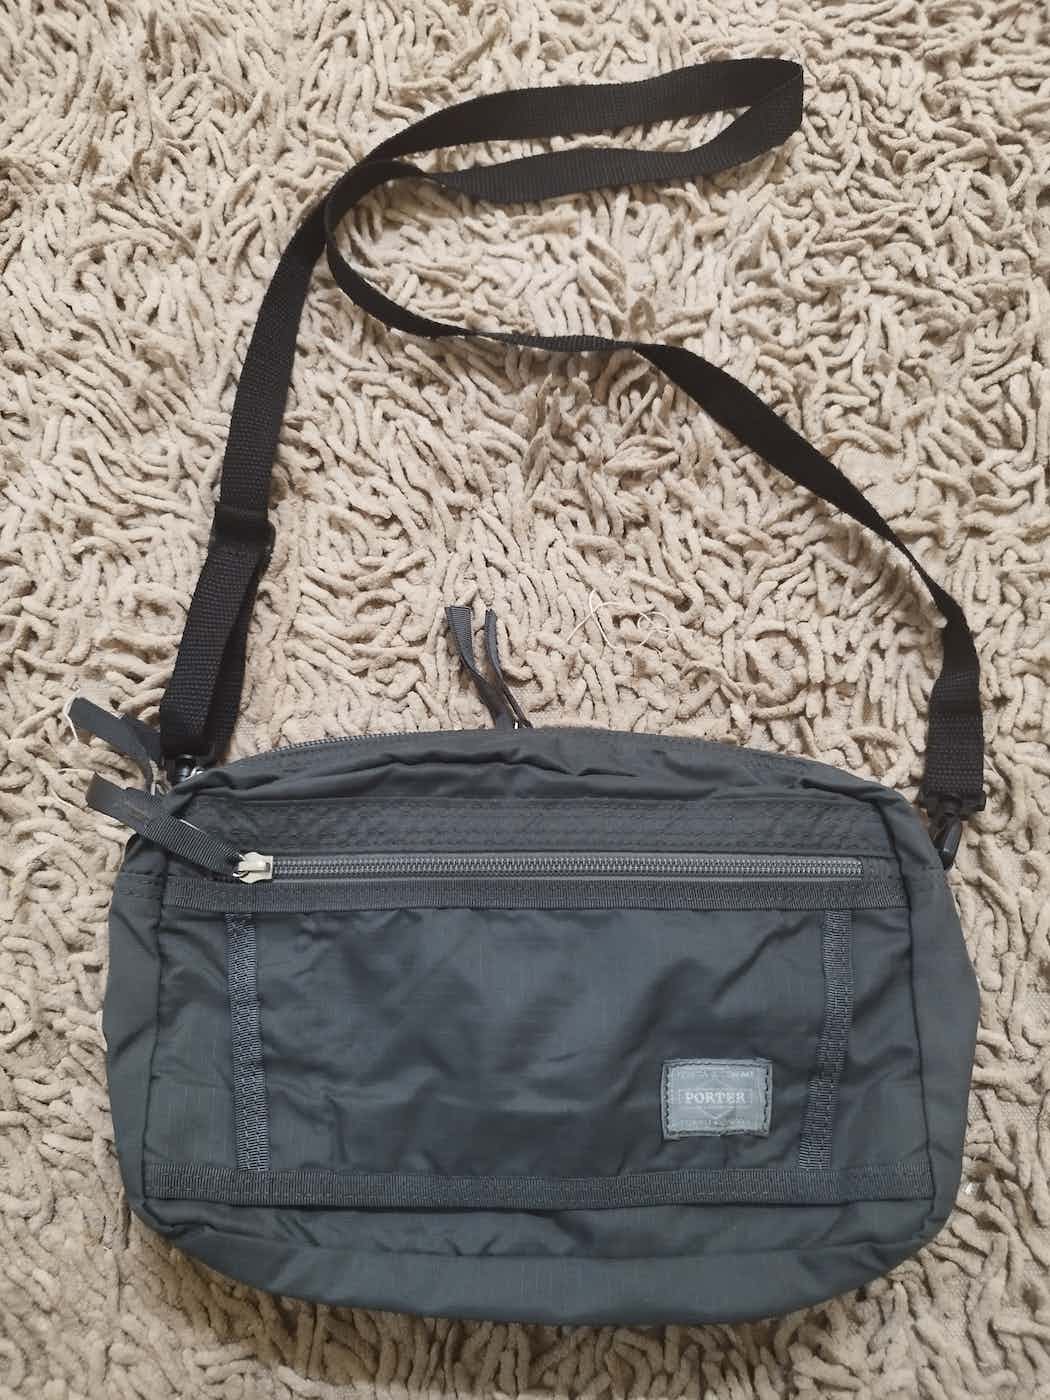 Porter 2 in 1 sling bag / backpack - 3